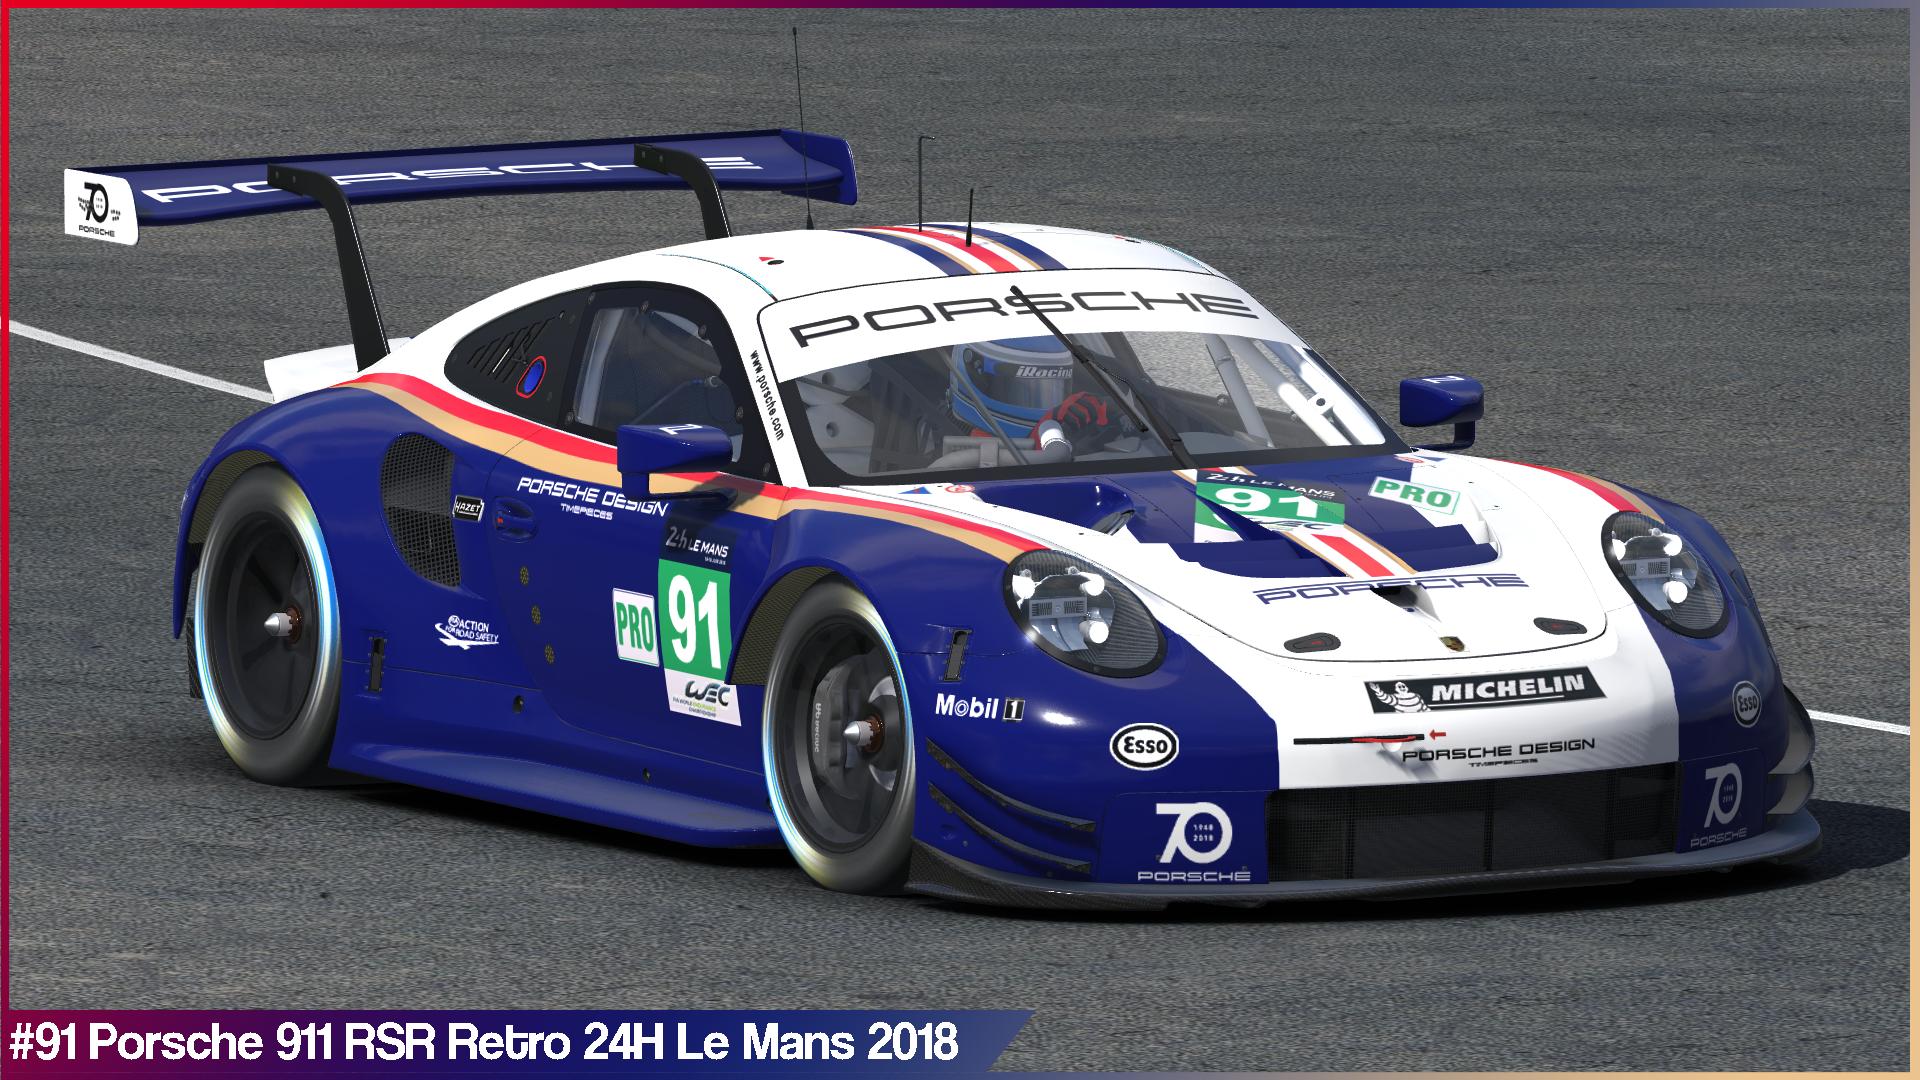 Preview of #91 Porsche Retro 24H Le Mans 2018 by Sergio Hernando